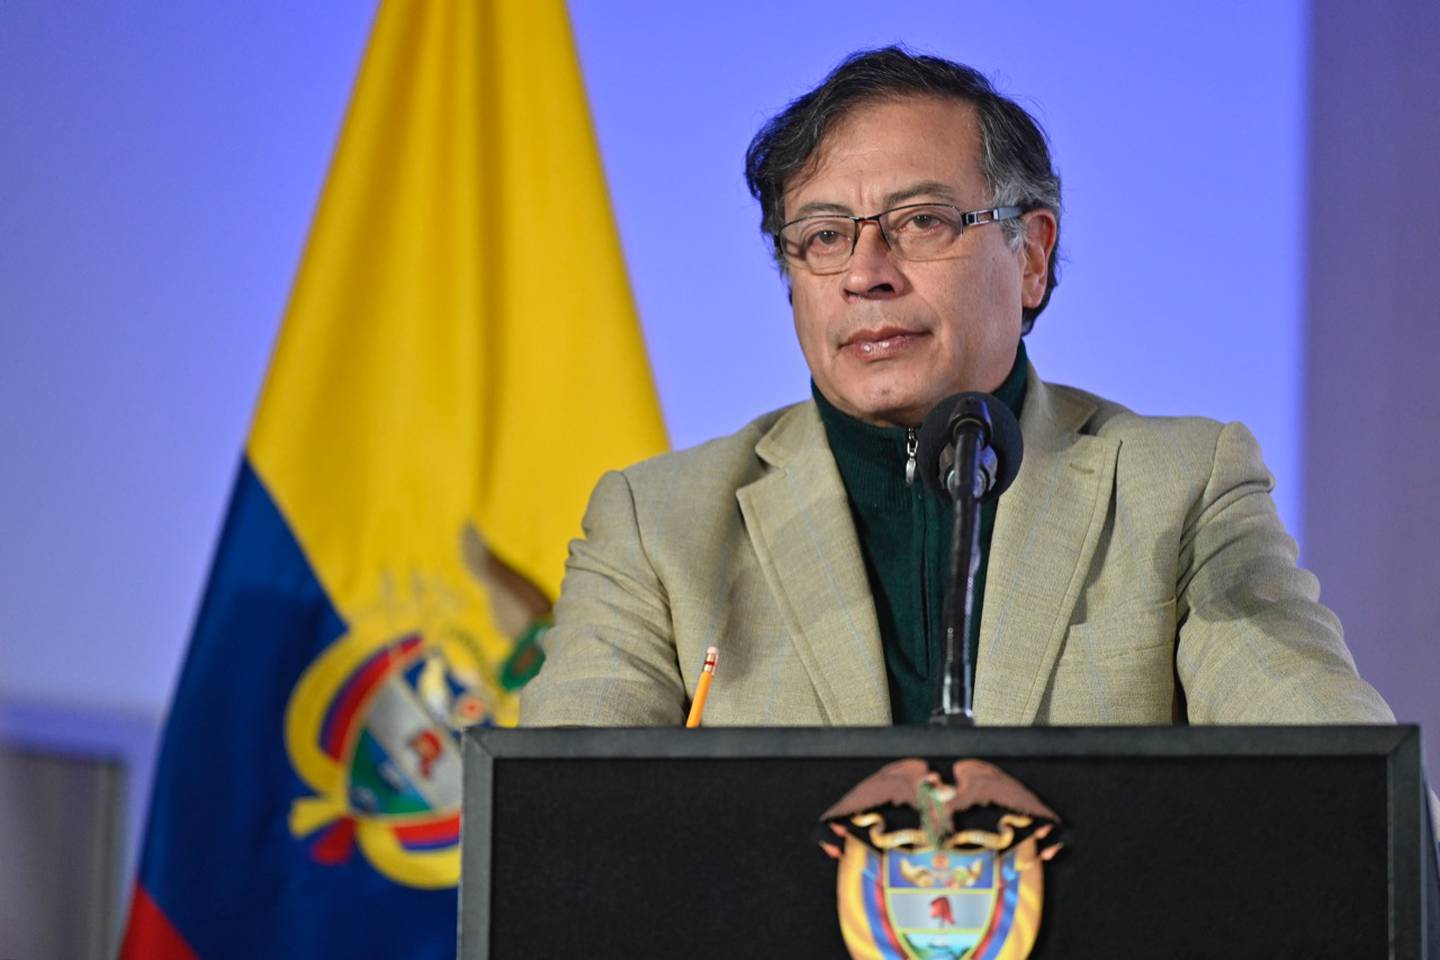 Incertidumbre en reforma pensional y laboral de Colombia afectaría PIB en 2023